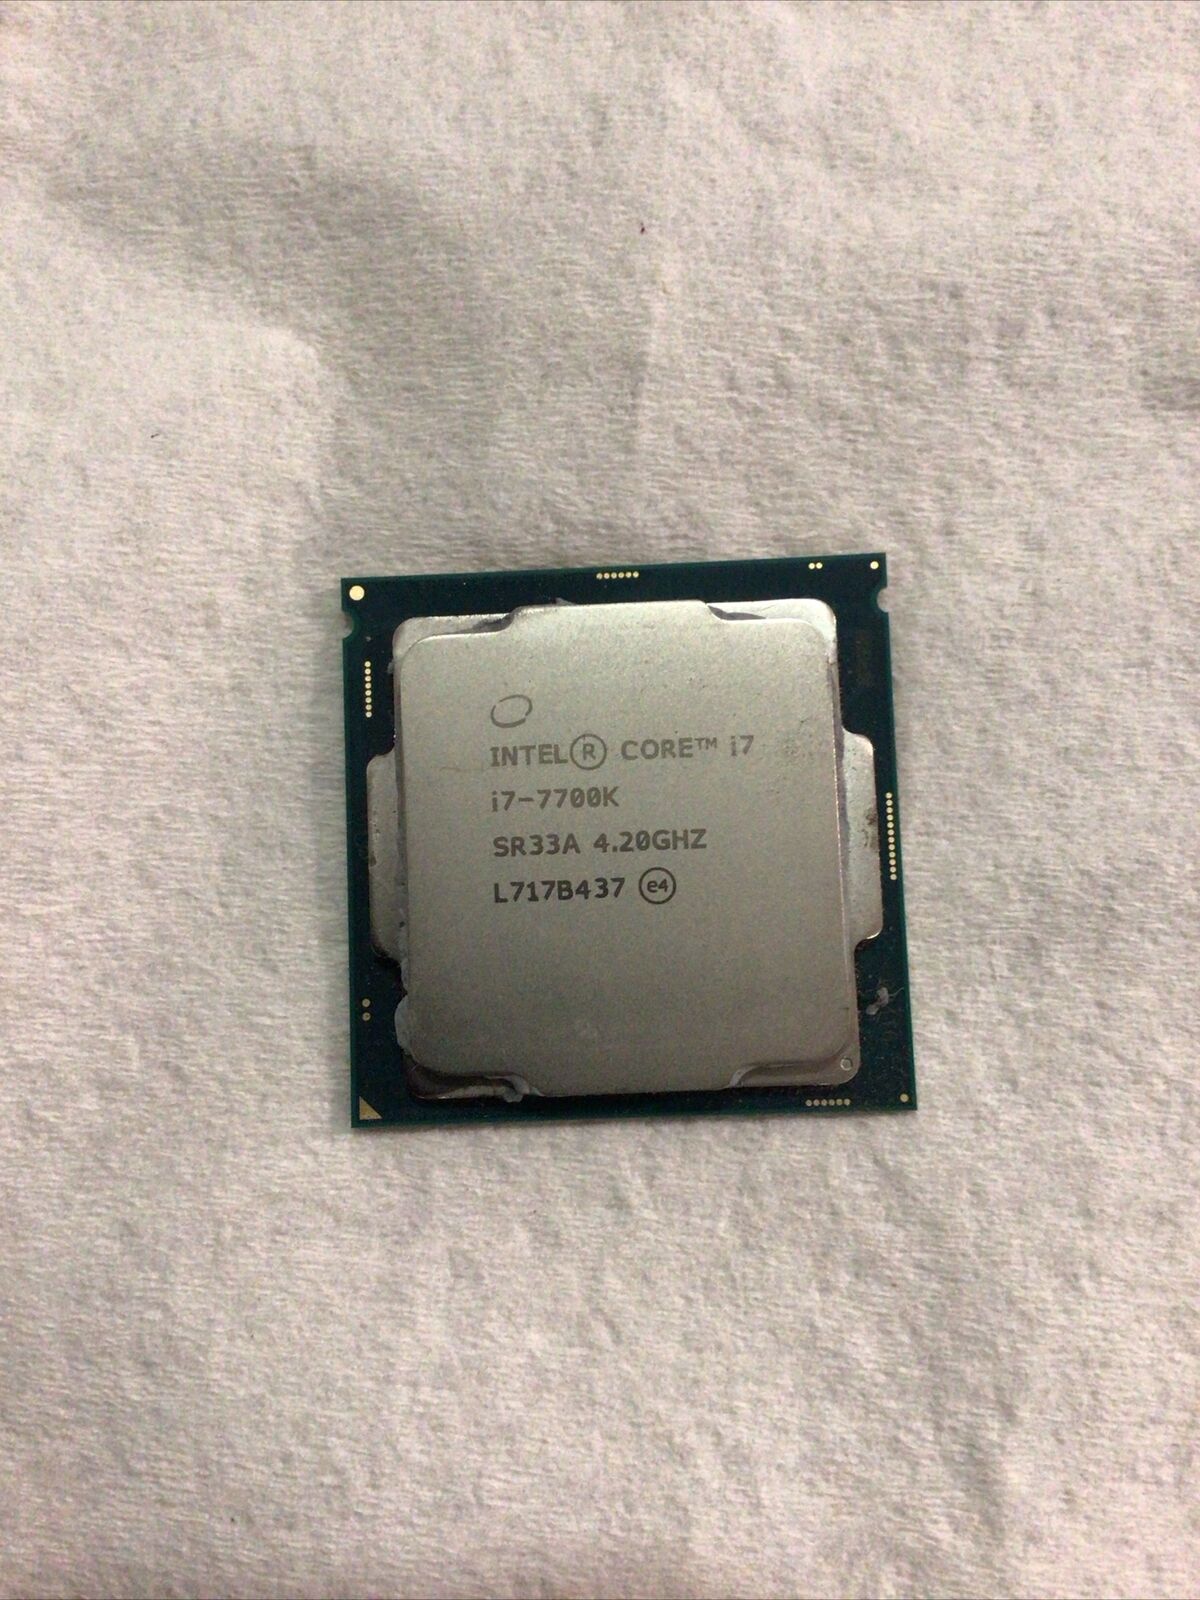 Intel Core i7-7700K. SR33A. 4.20GHZ